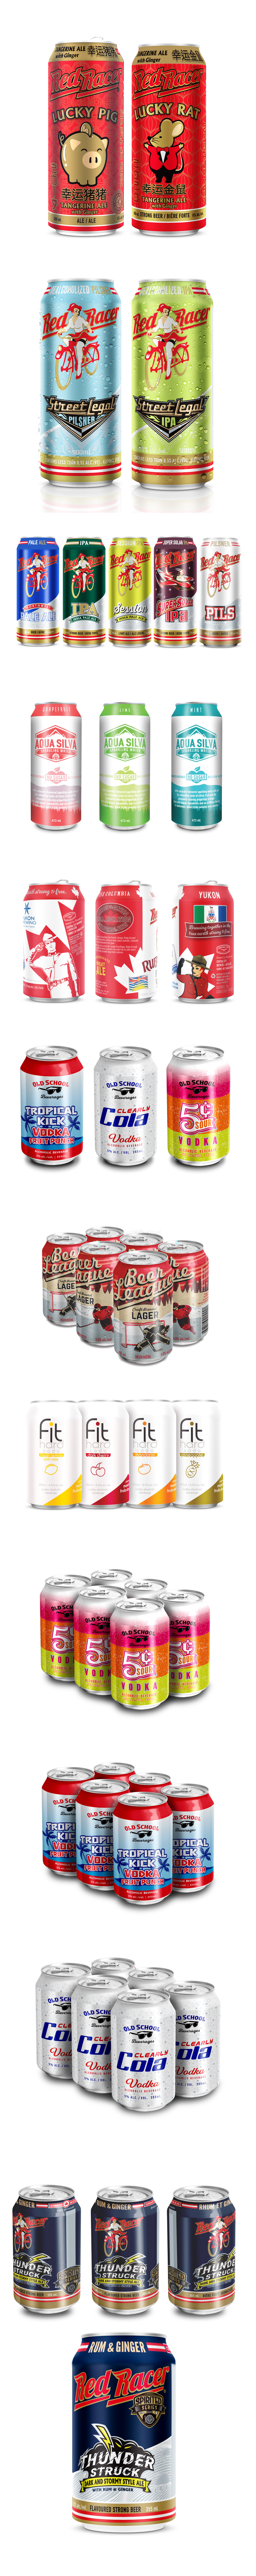 alcohol beer beer can design Beer Packaging Design beverage brewery branding craft craft beer packaging